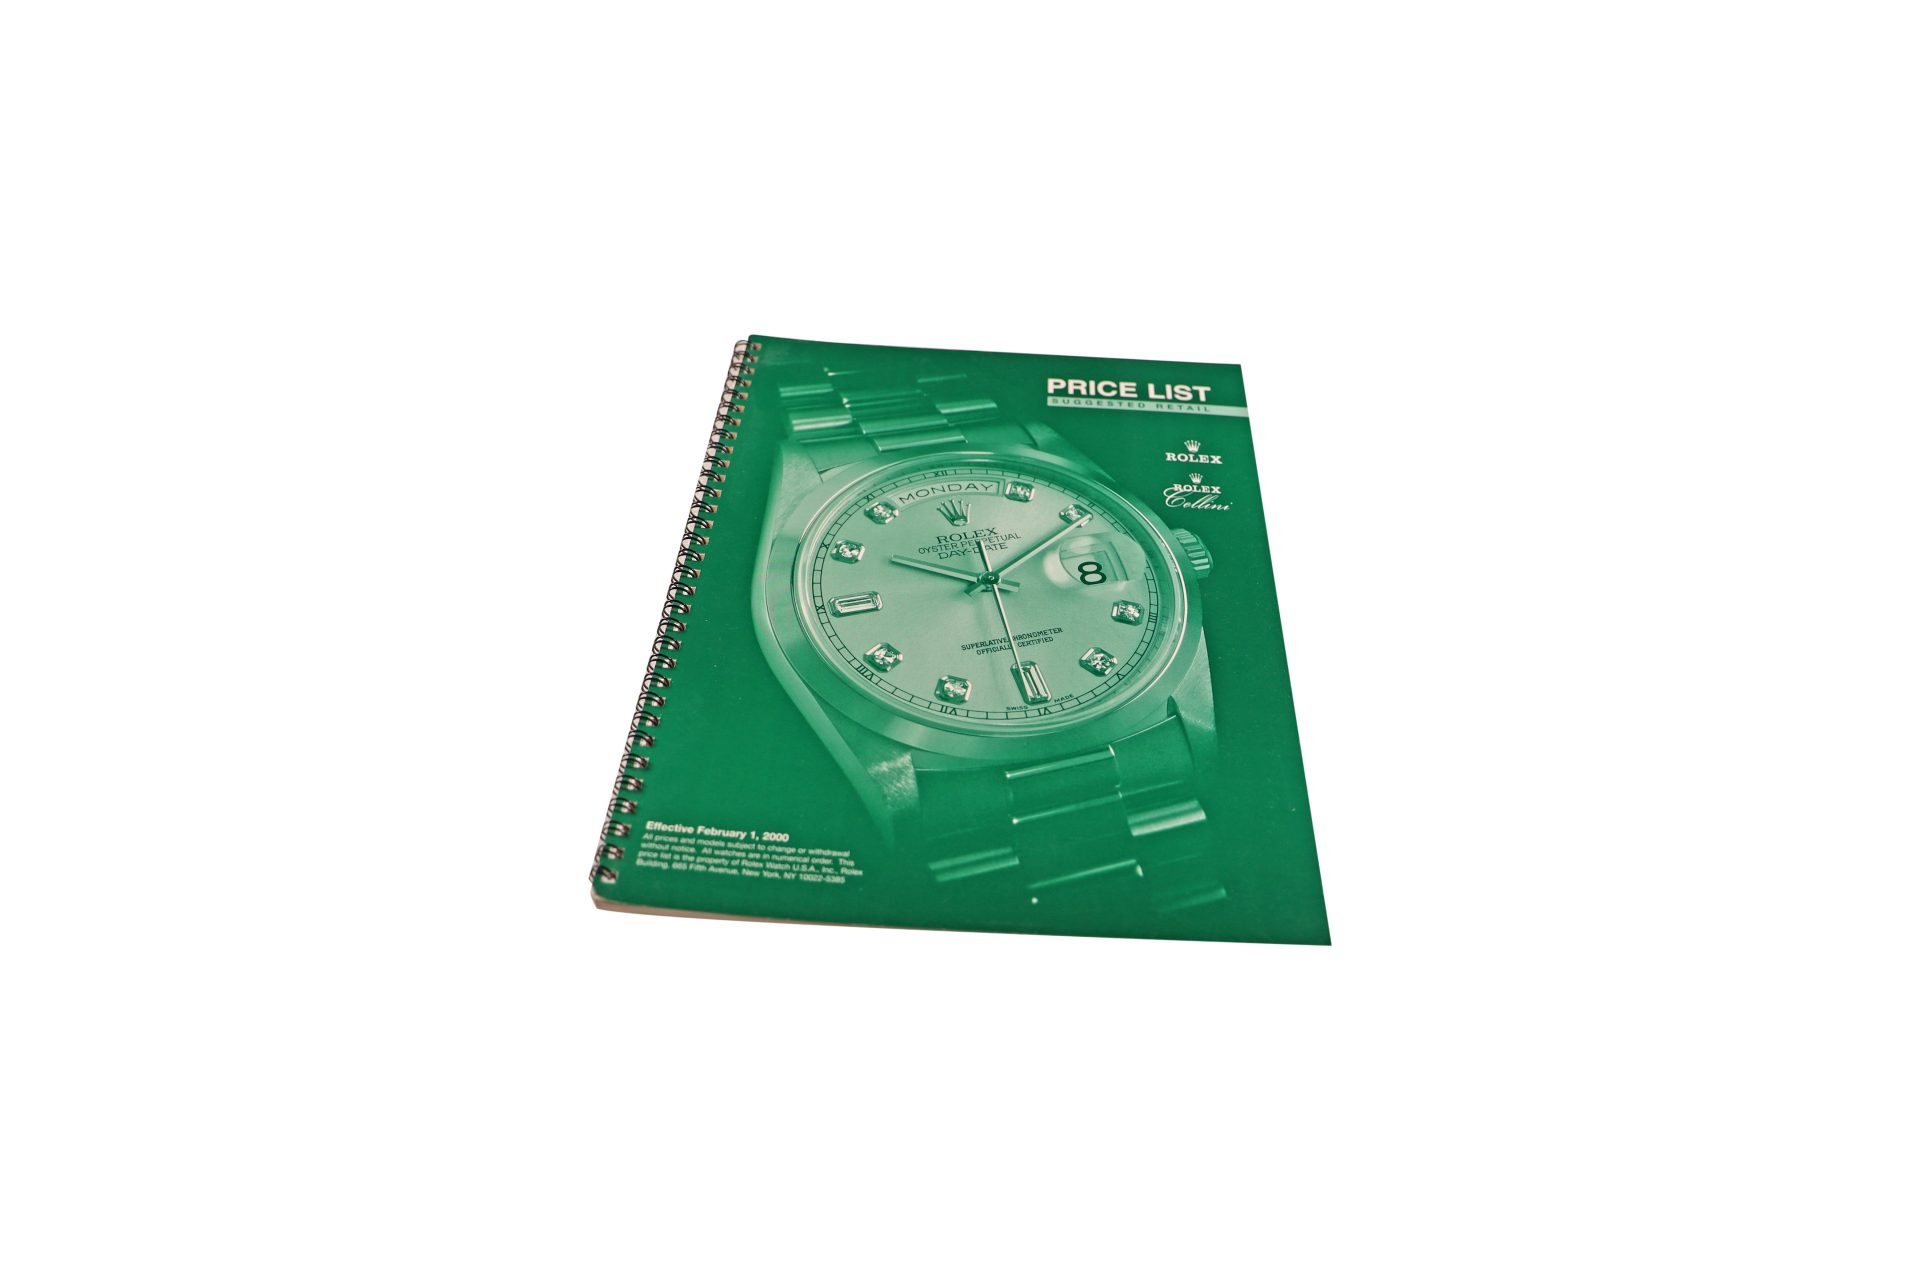 Rolex-2000-Master-Dealer-Watch-Price-List-Catalog-1 - Rare Watch Parts